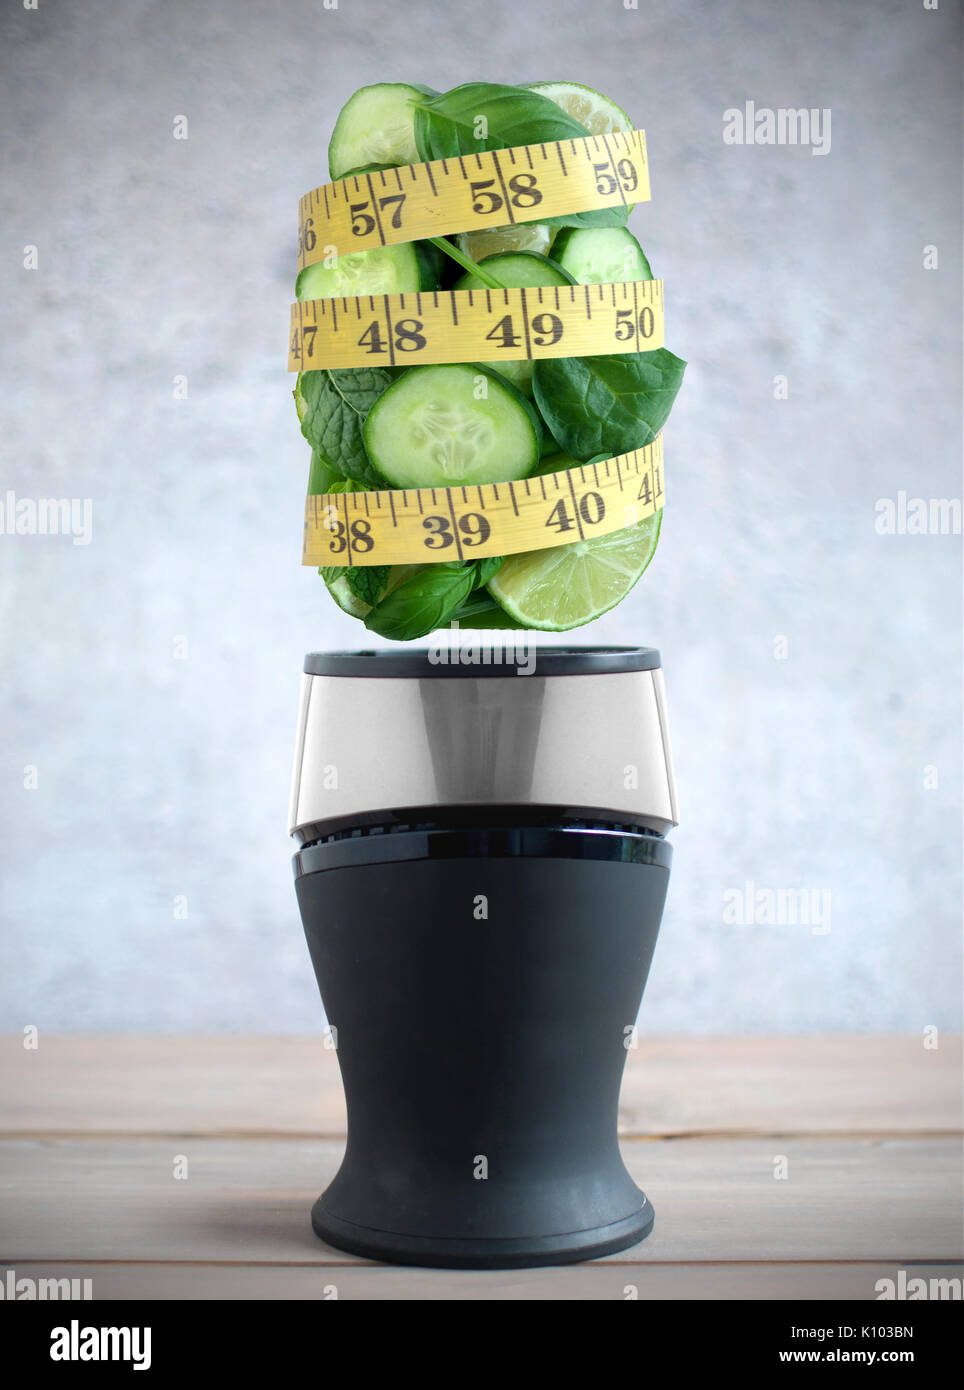 Ruban de mesure autour des fruits et légumes verts frais ingrédients planant au-dessus d'un mélangeur Banque D'Images